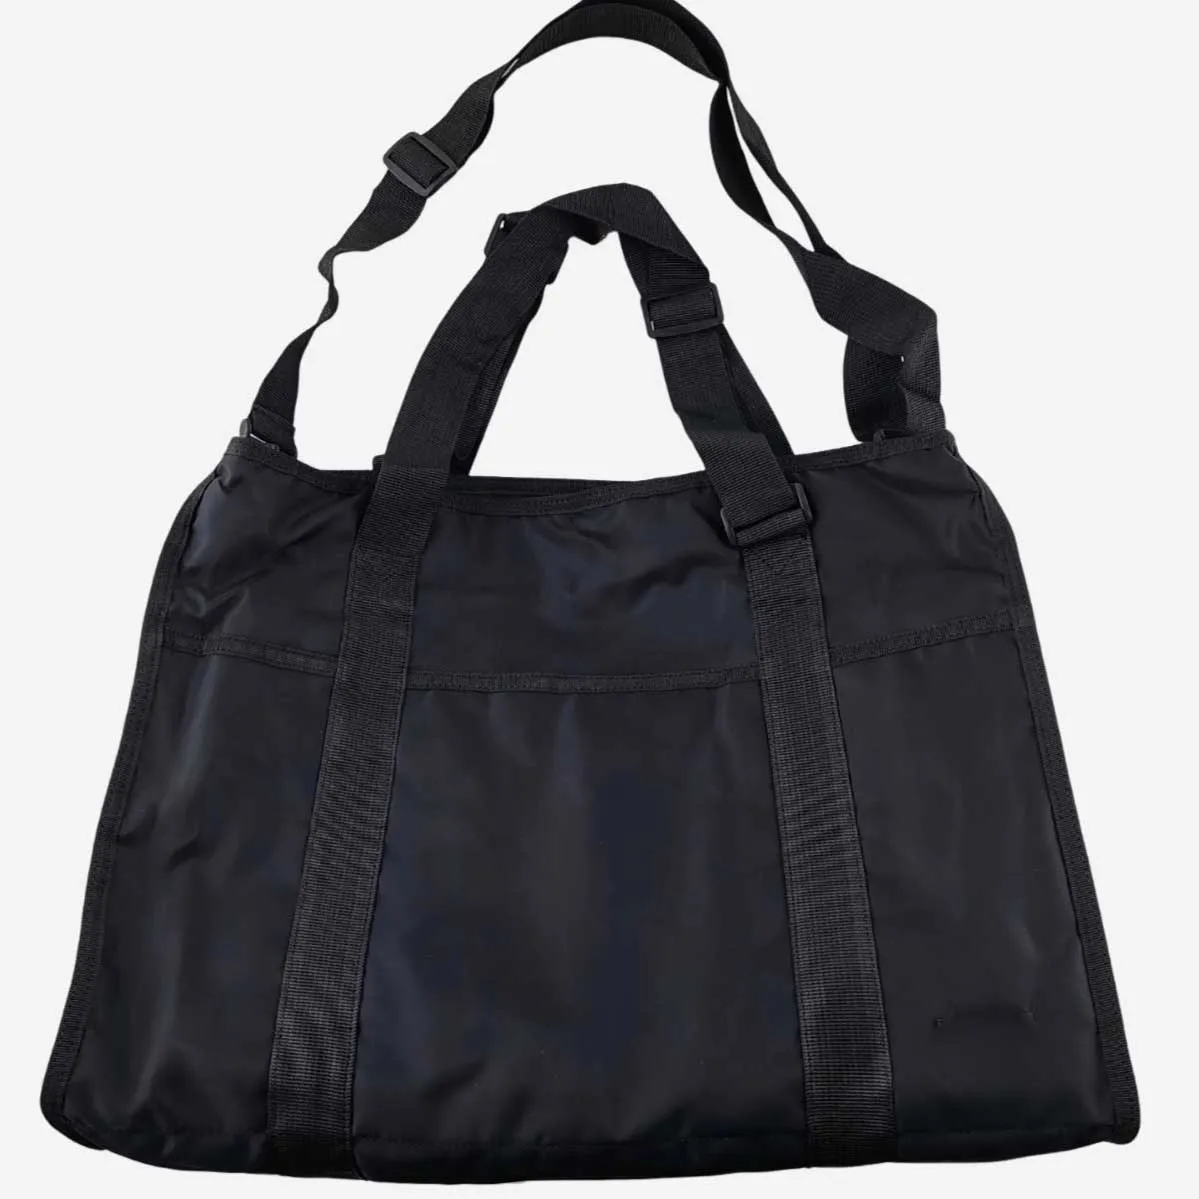 Arge capacity shoulder messenger bag hand luggage short distance travel bag lightweight thumb200